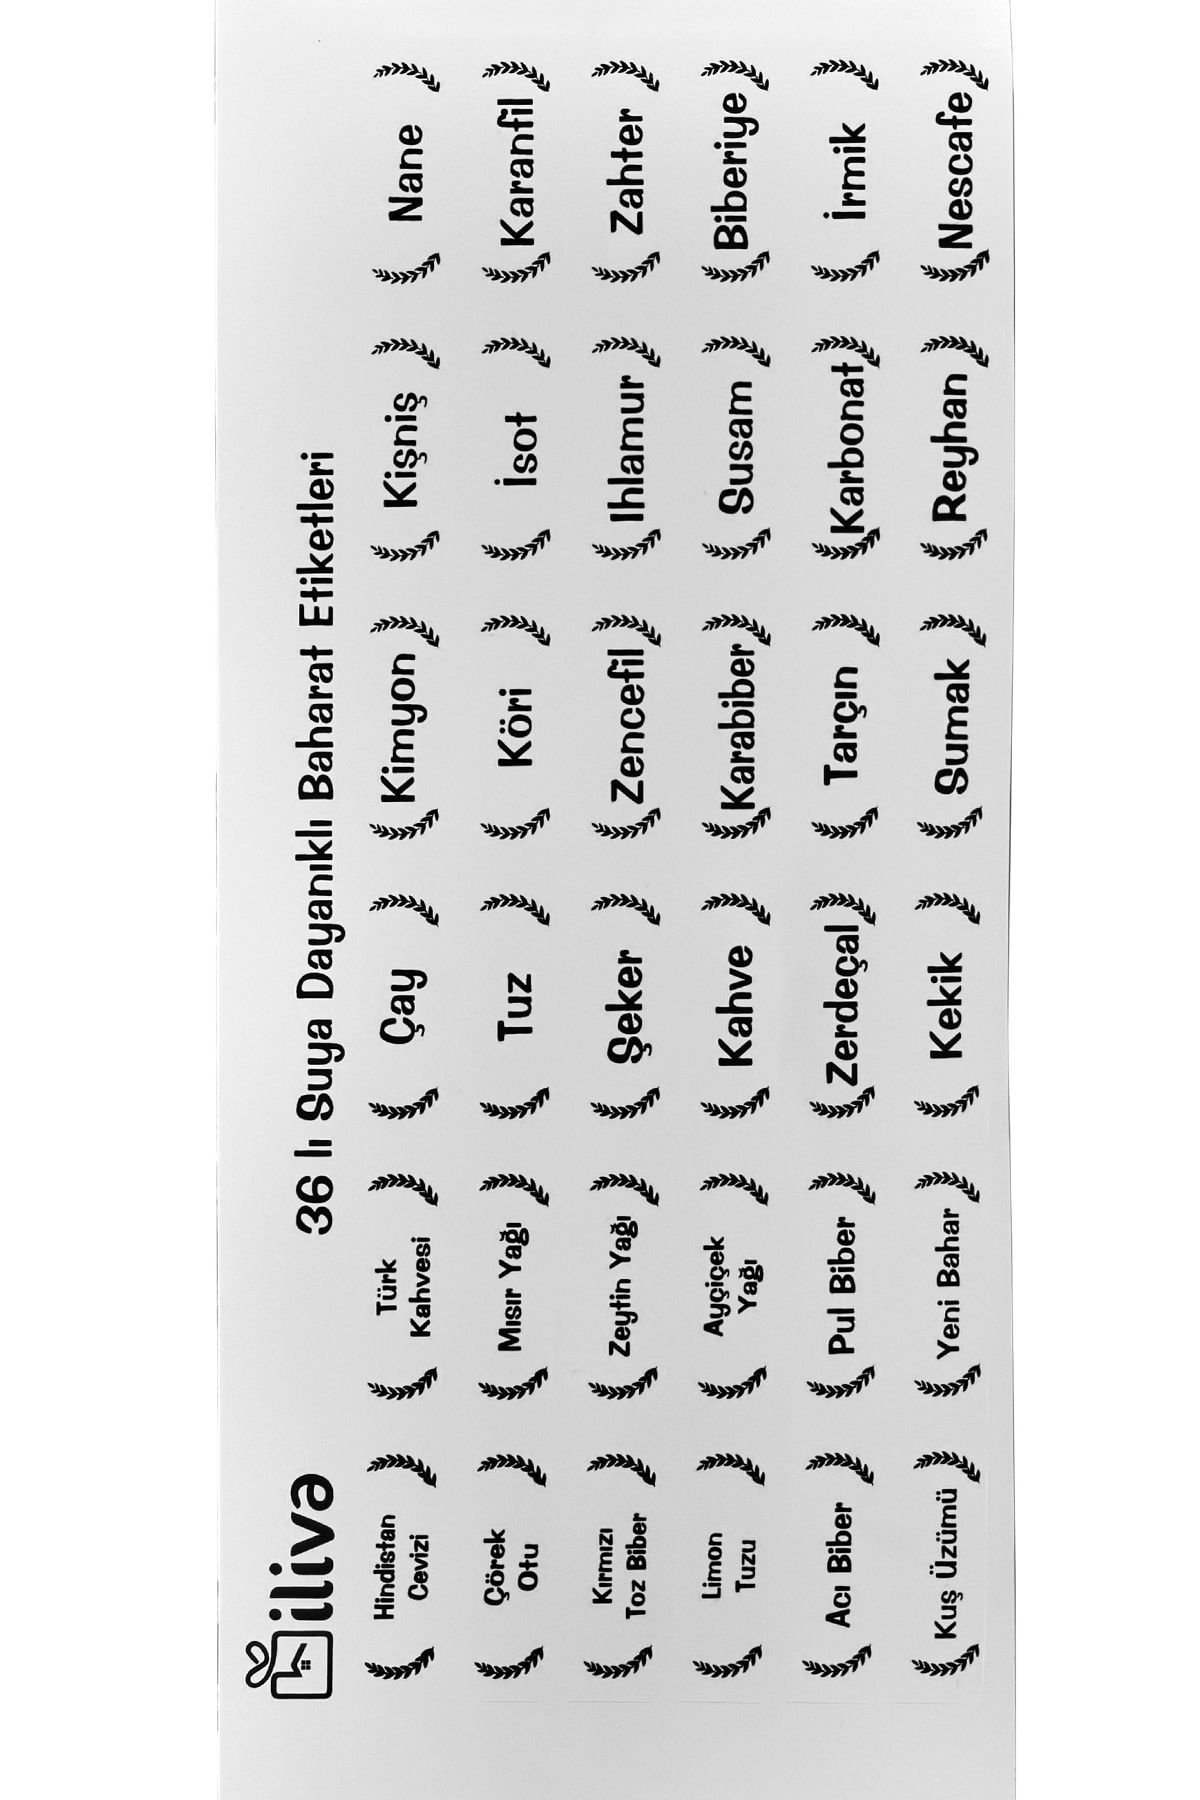 İLİVA Beyaz Baharat, Bakliyat Kavanoz Saklama Kabı Etiketi - 36 Adet Suya Dayanıklı Baharatlık Sticker